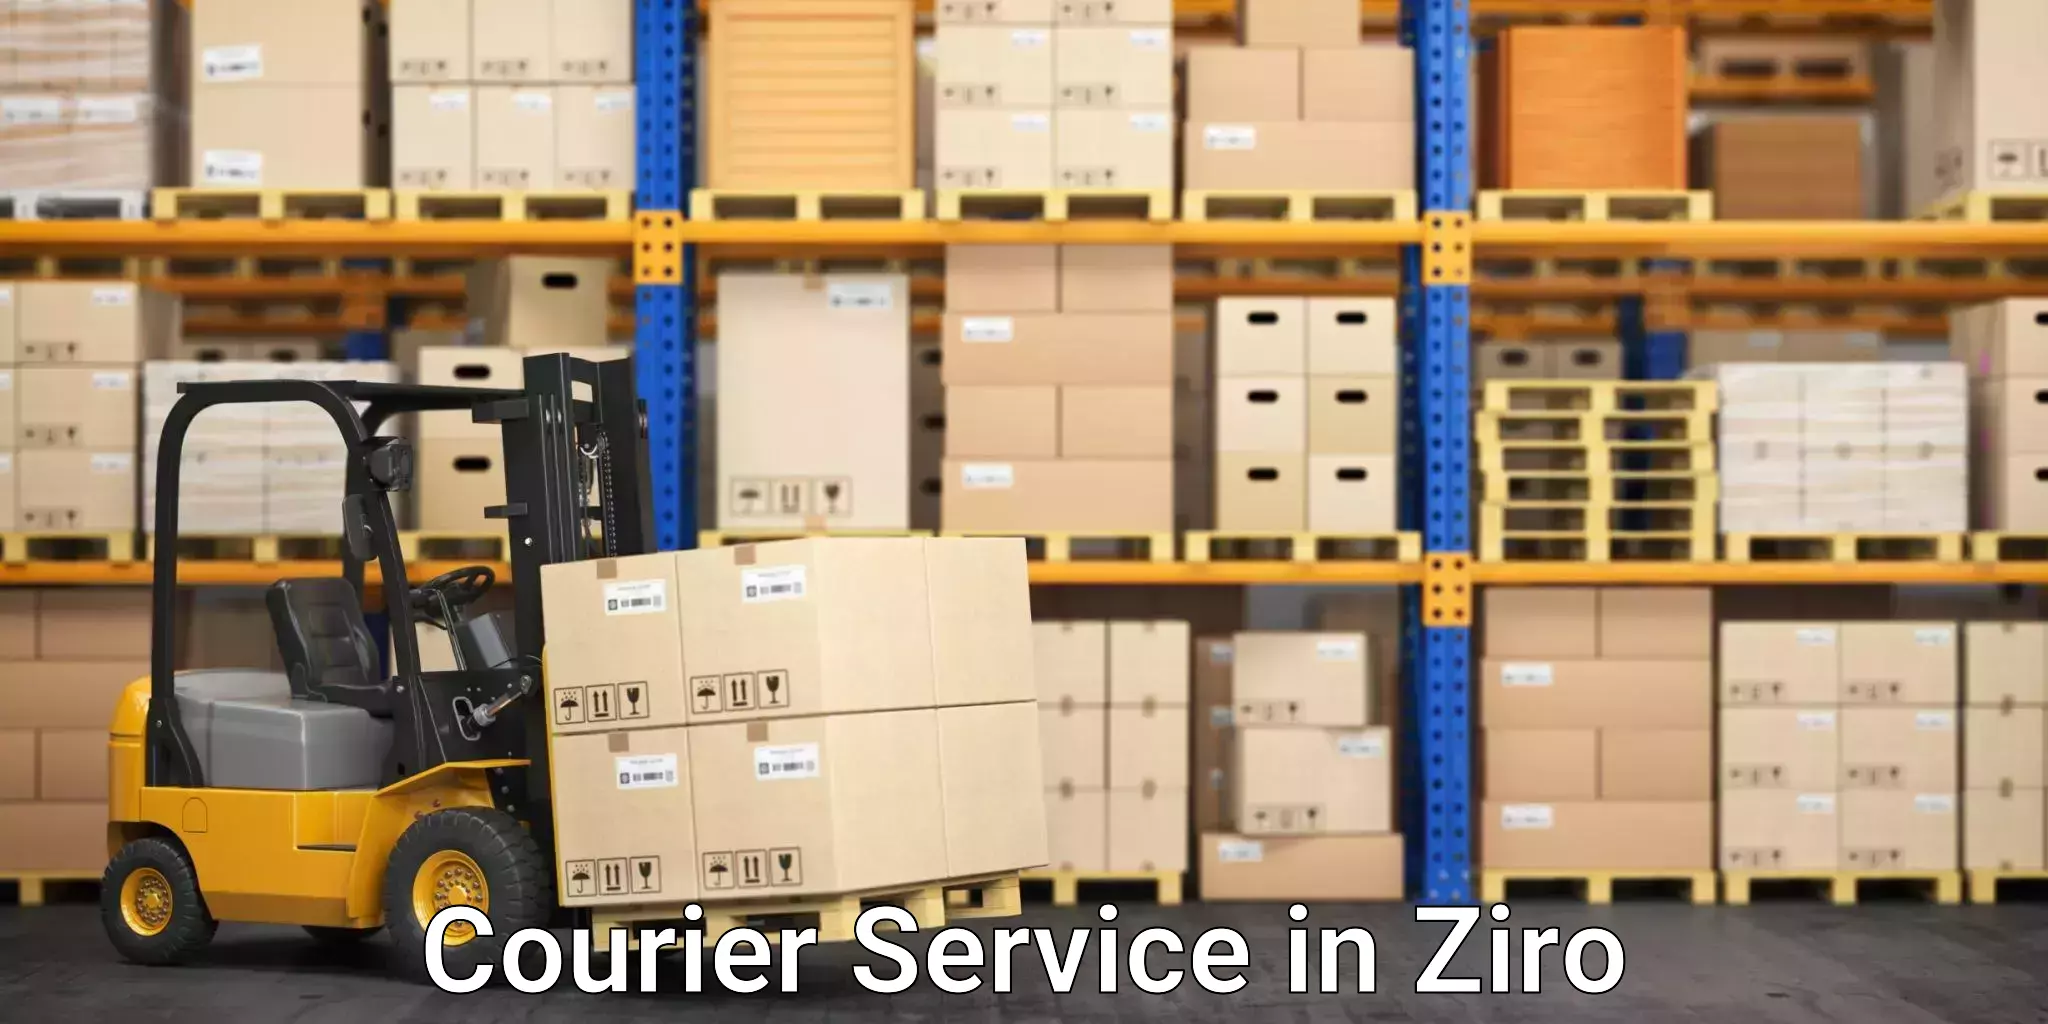 Smart parcel solutions in Ziro